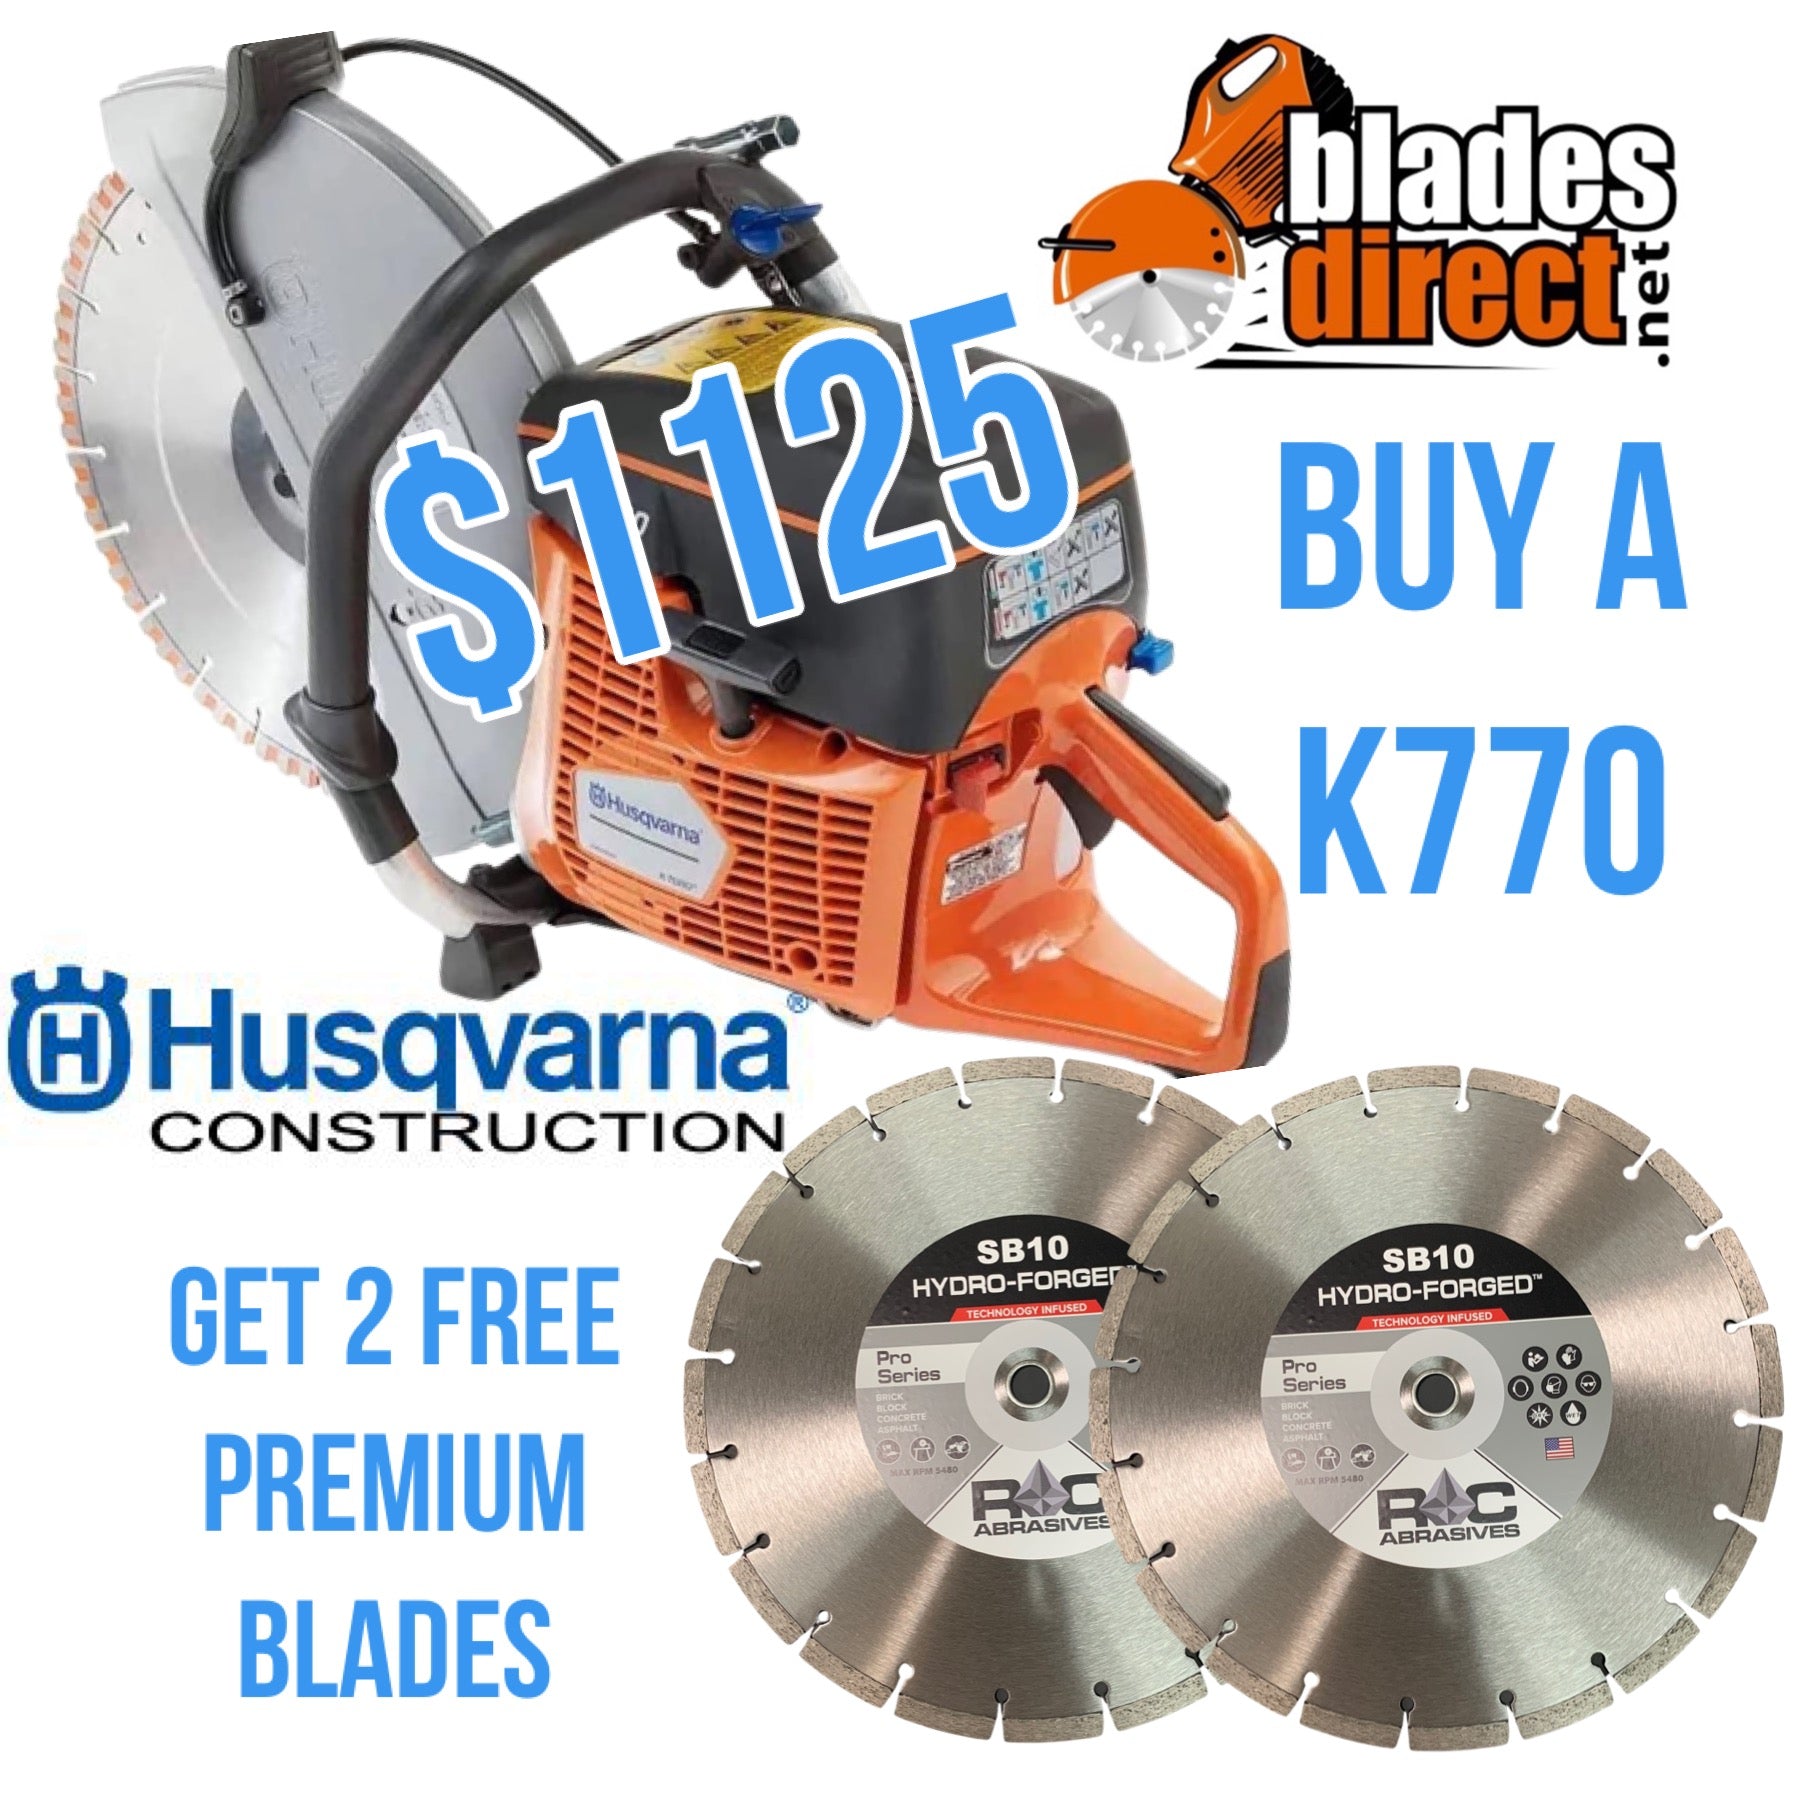 Husqvarna Power Cutter K770 Husqvarna Saws Blades Direct